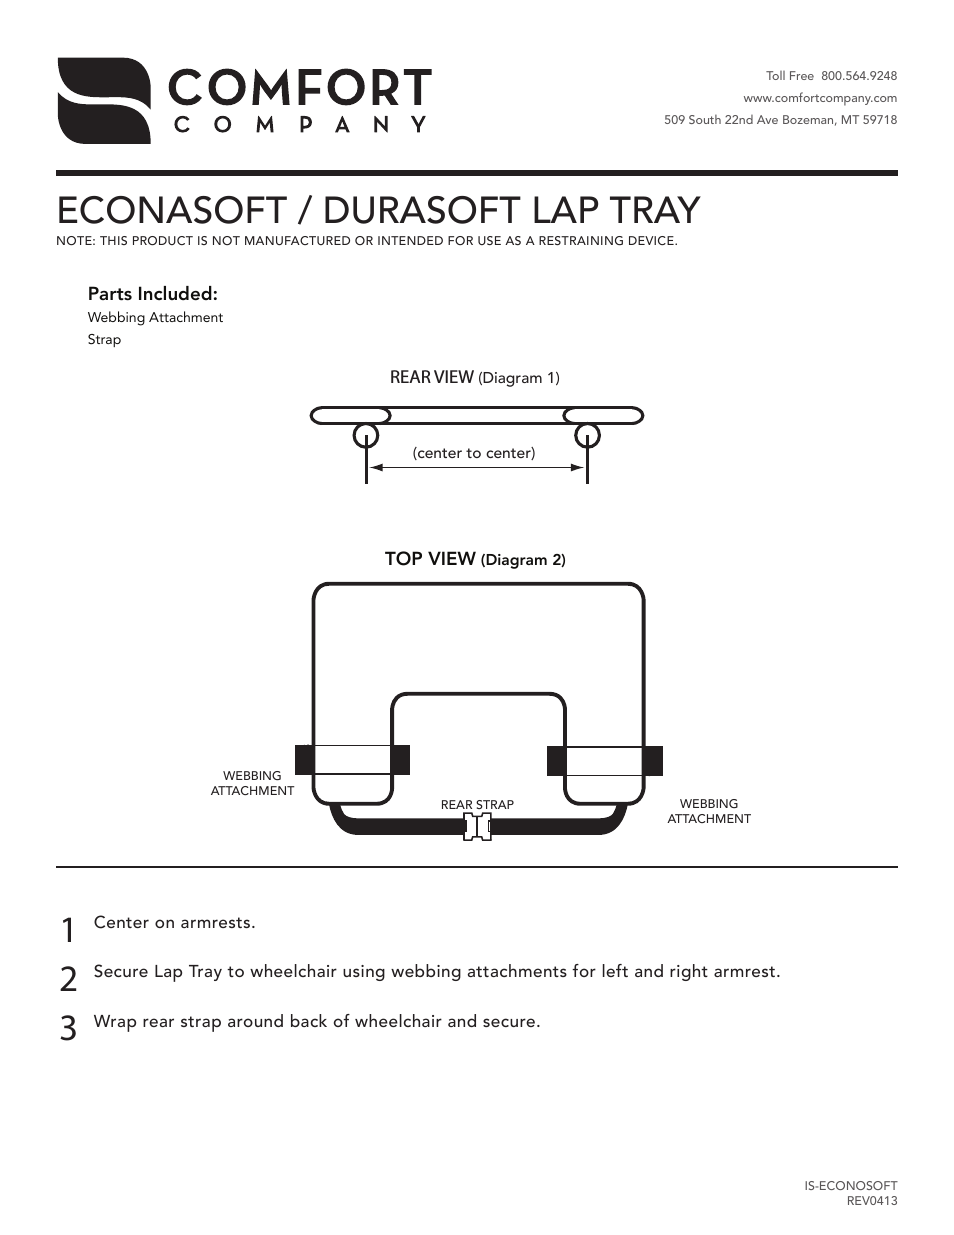 Econasoft & Durasoft Lap Tray